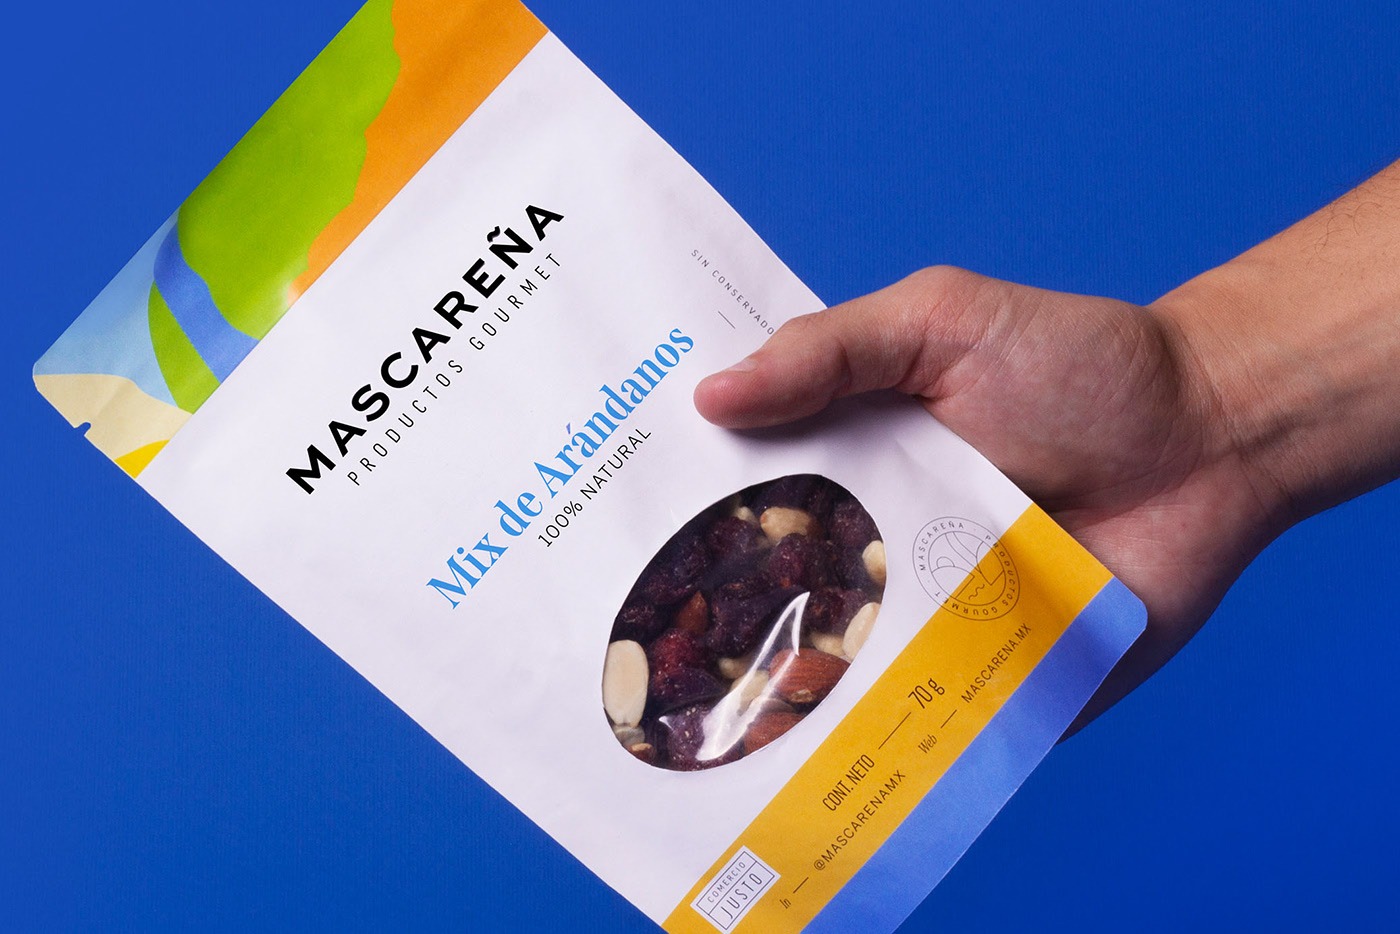 Mascare~na天然食品包装设计